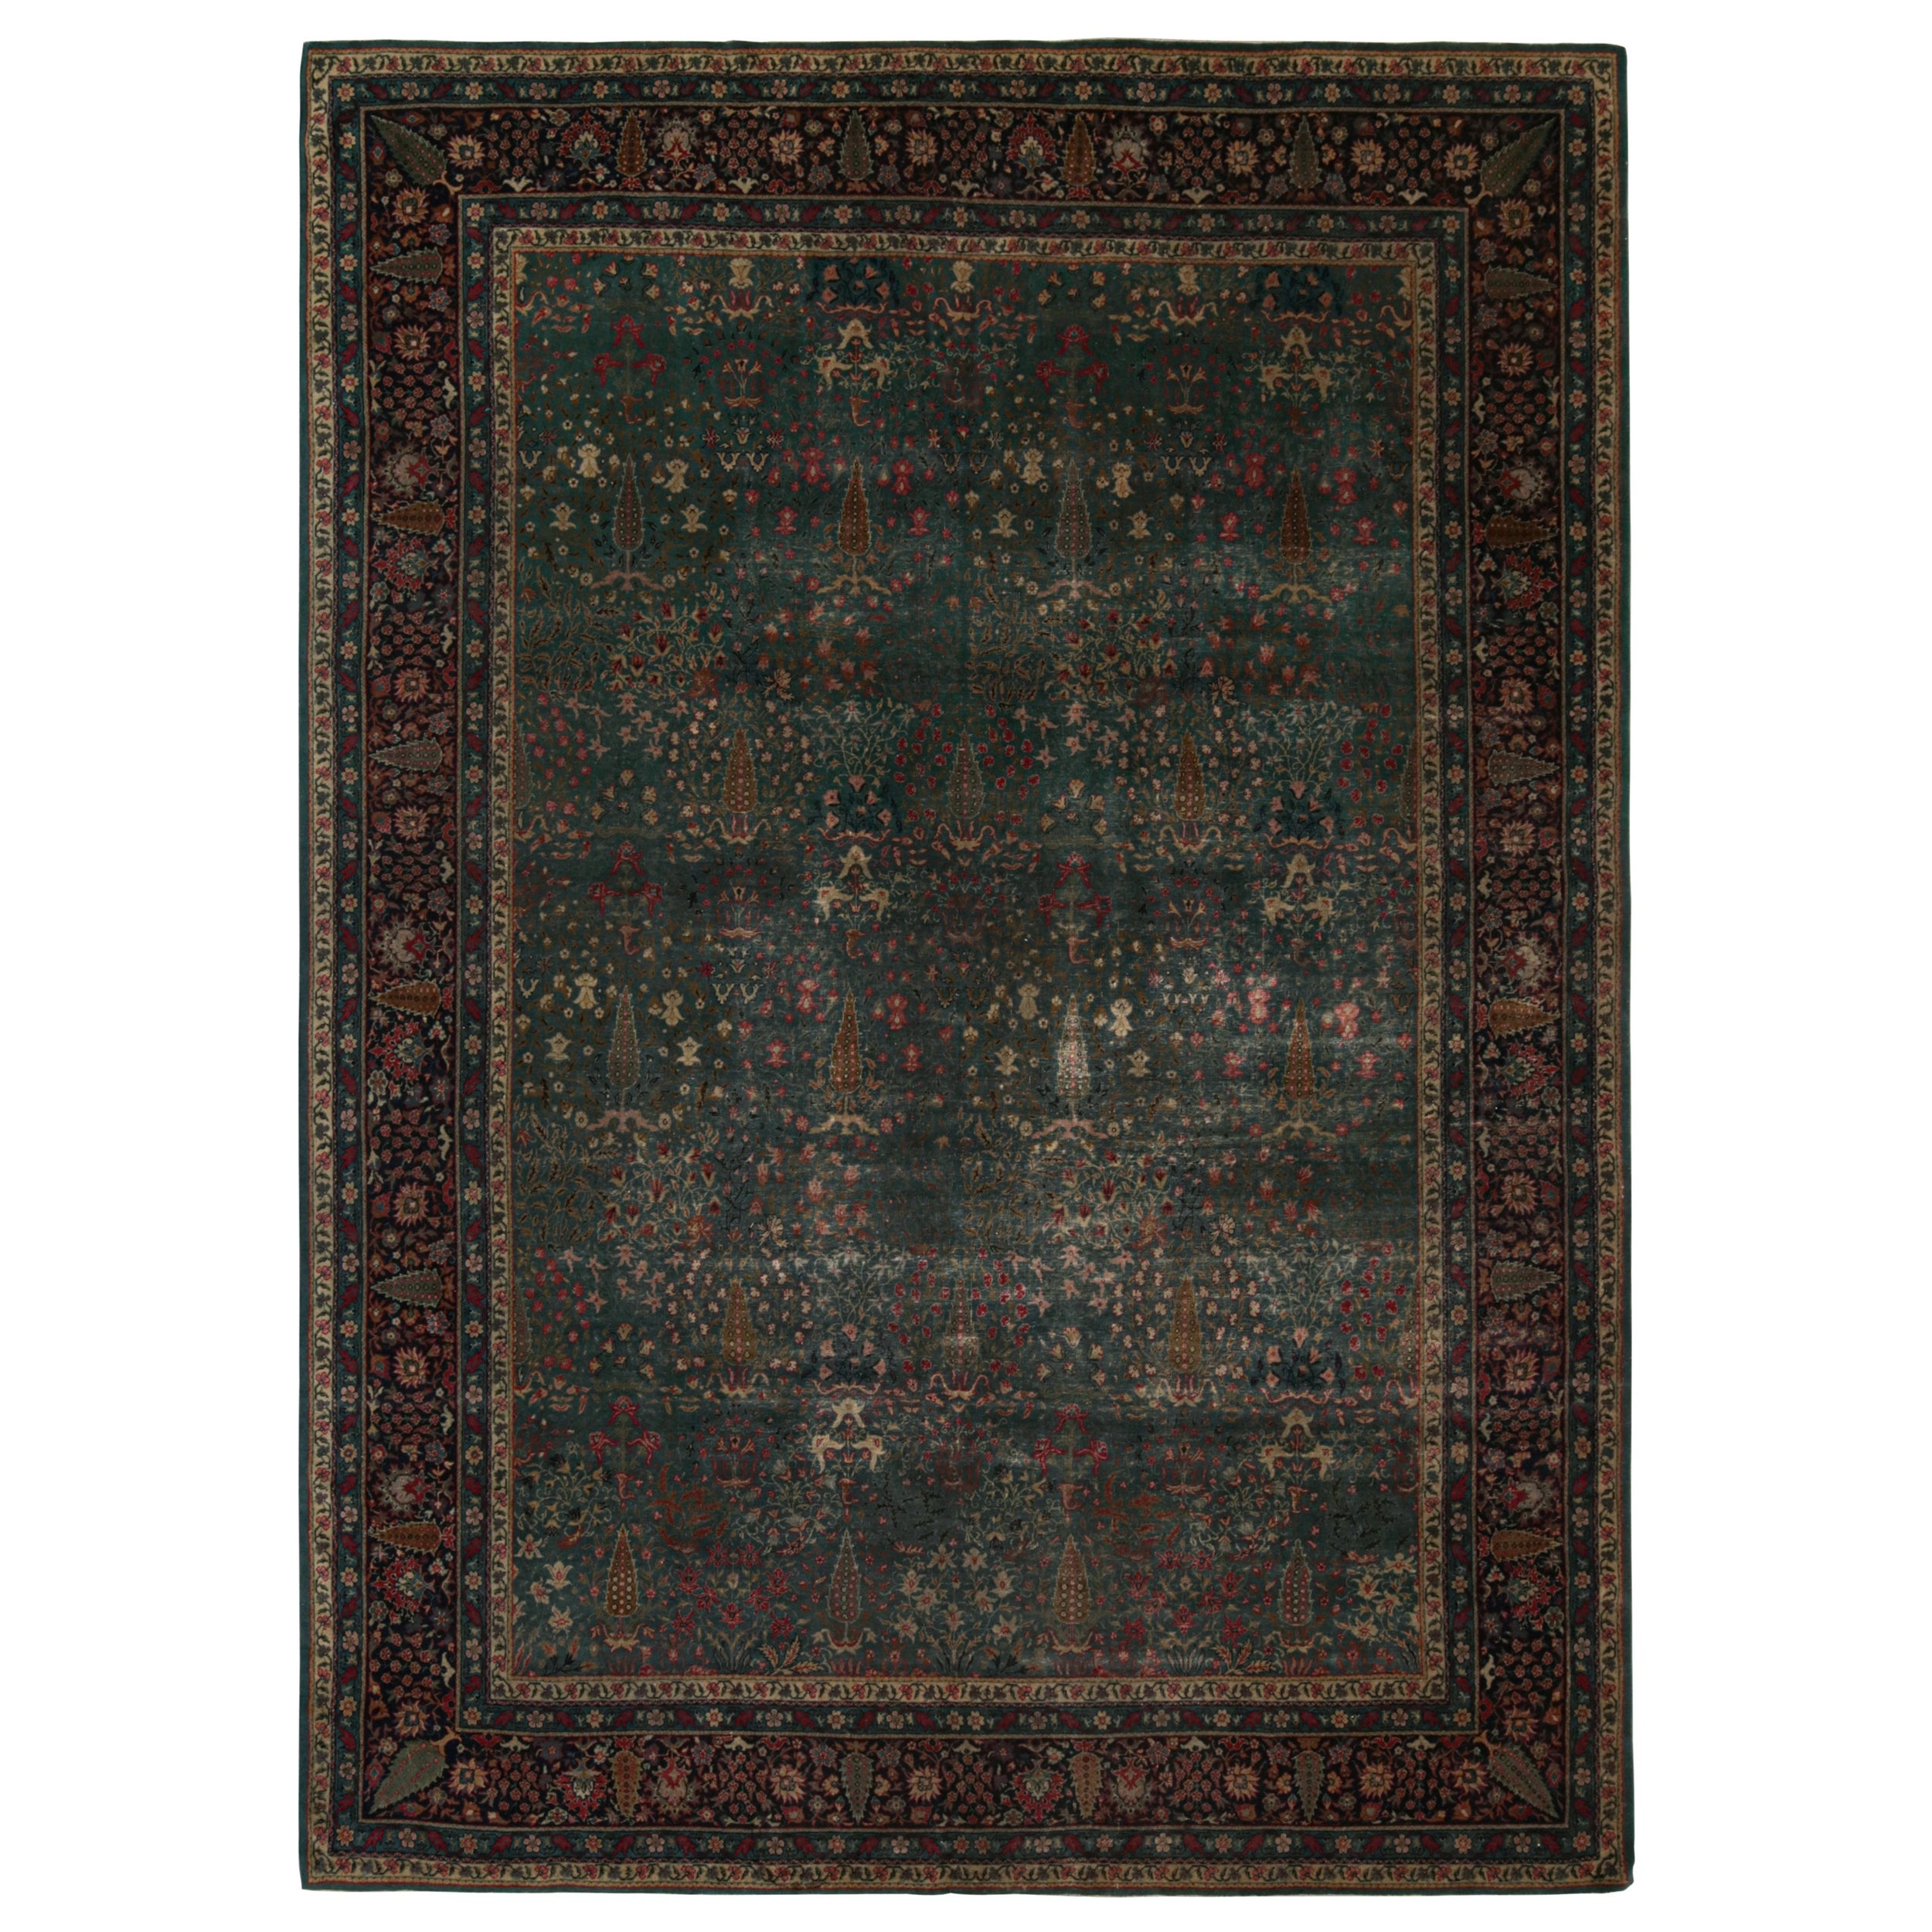 Tapis Sivas ancien en sarcelle avec motifs floraux, de Rug & Kilim